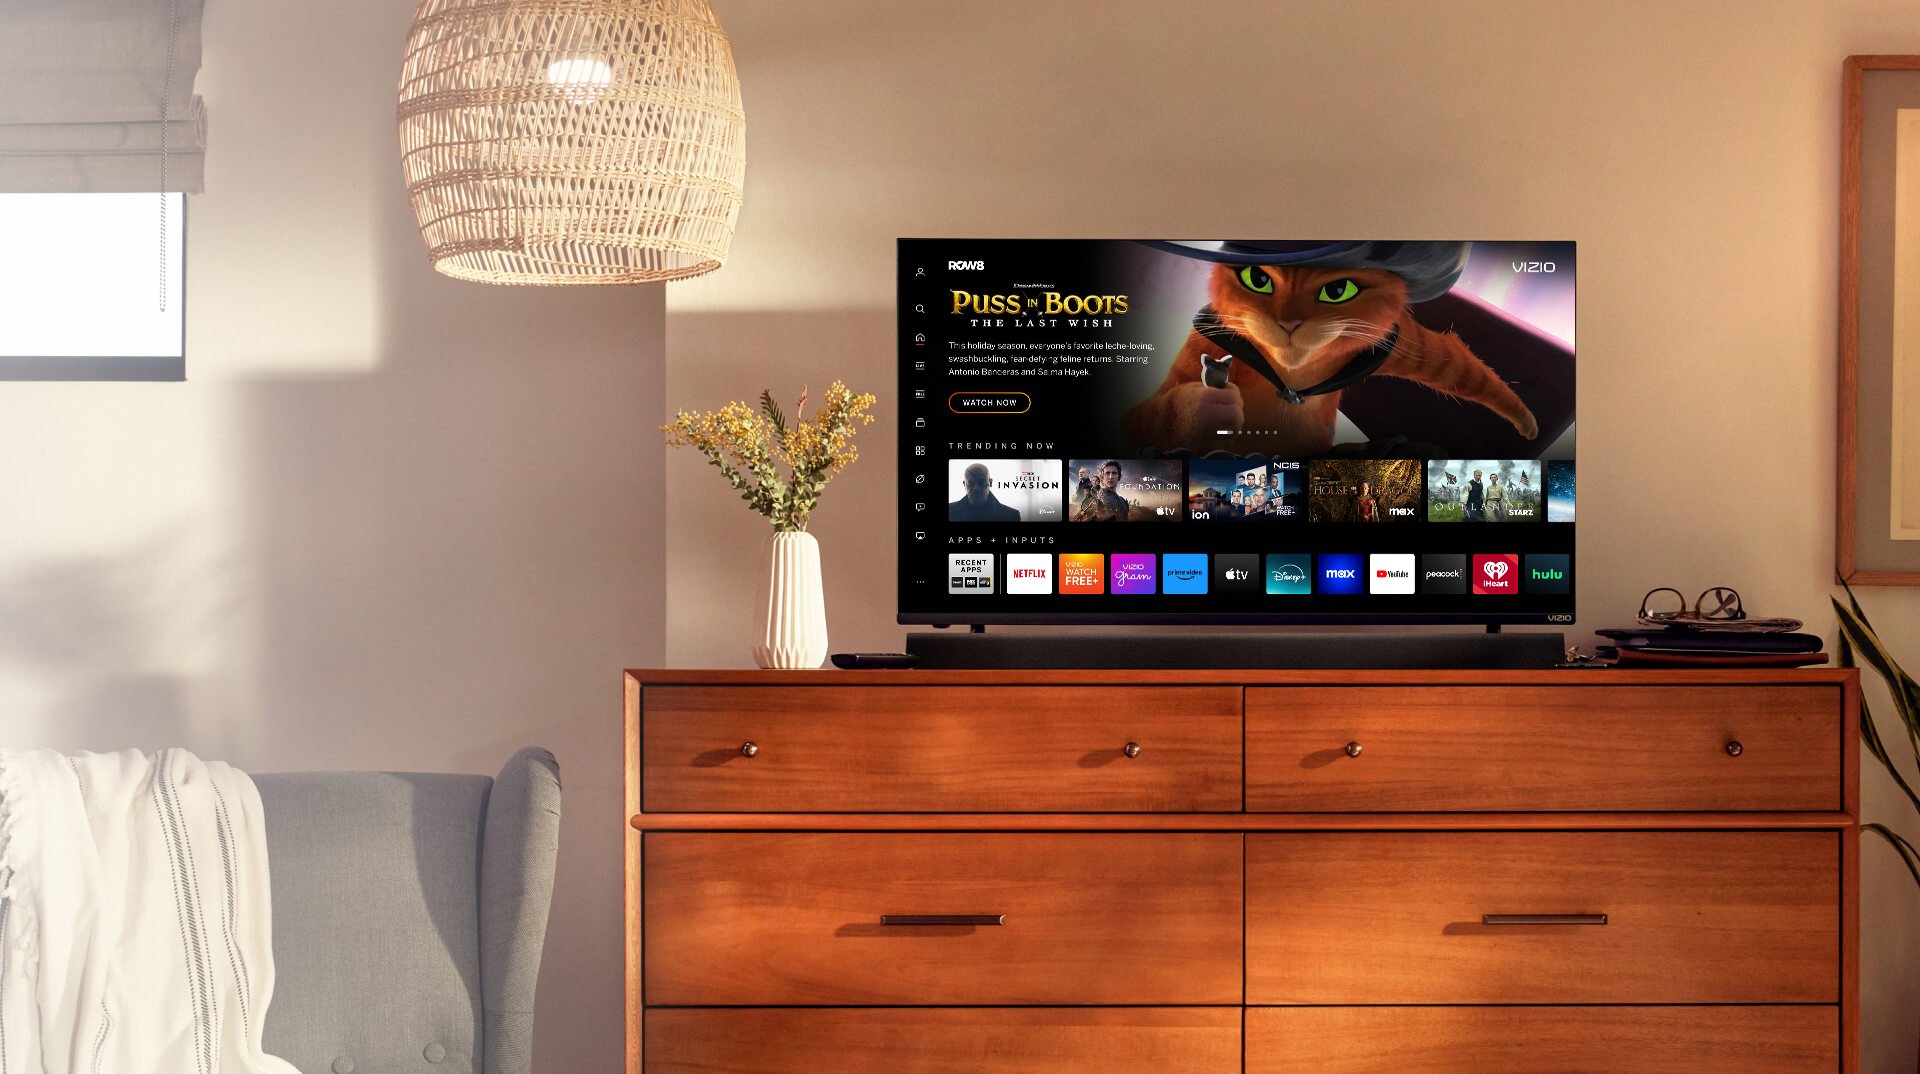 VIZIO Smart TV de 24 pulgadas, televisión de la serie D Full HD 1080p con  Apple AirPlay y Chromecast incorporado (D24f-G1)